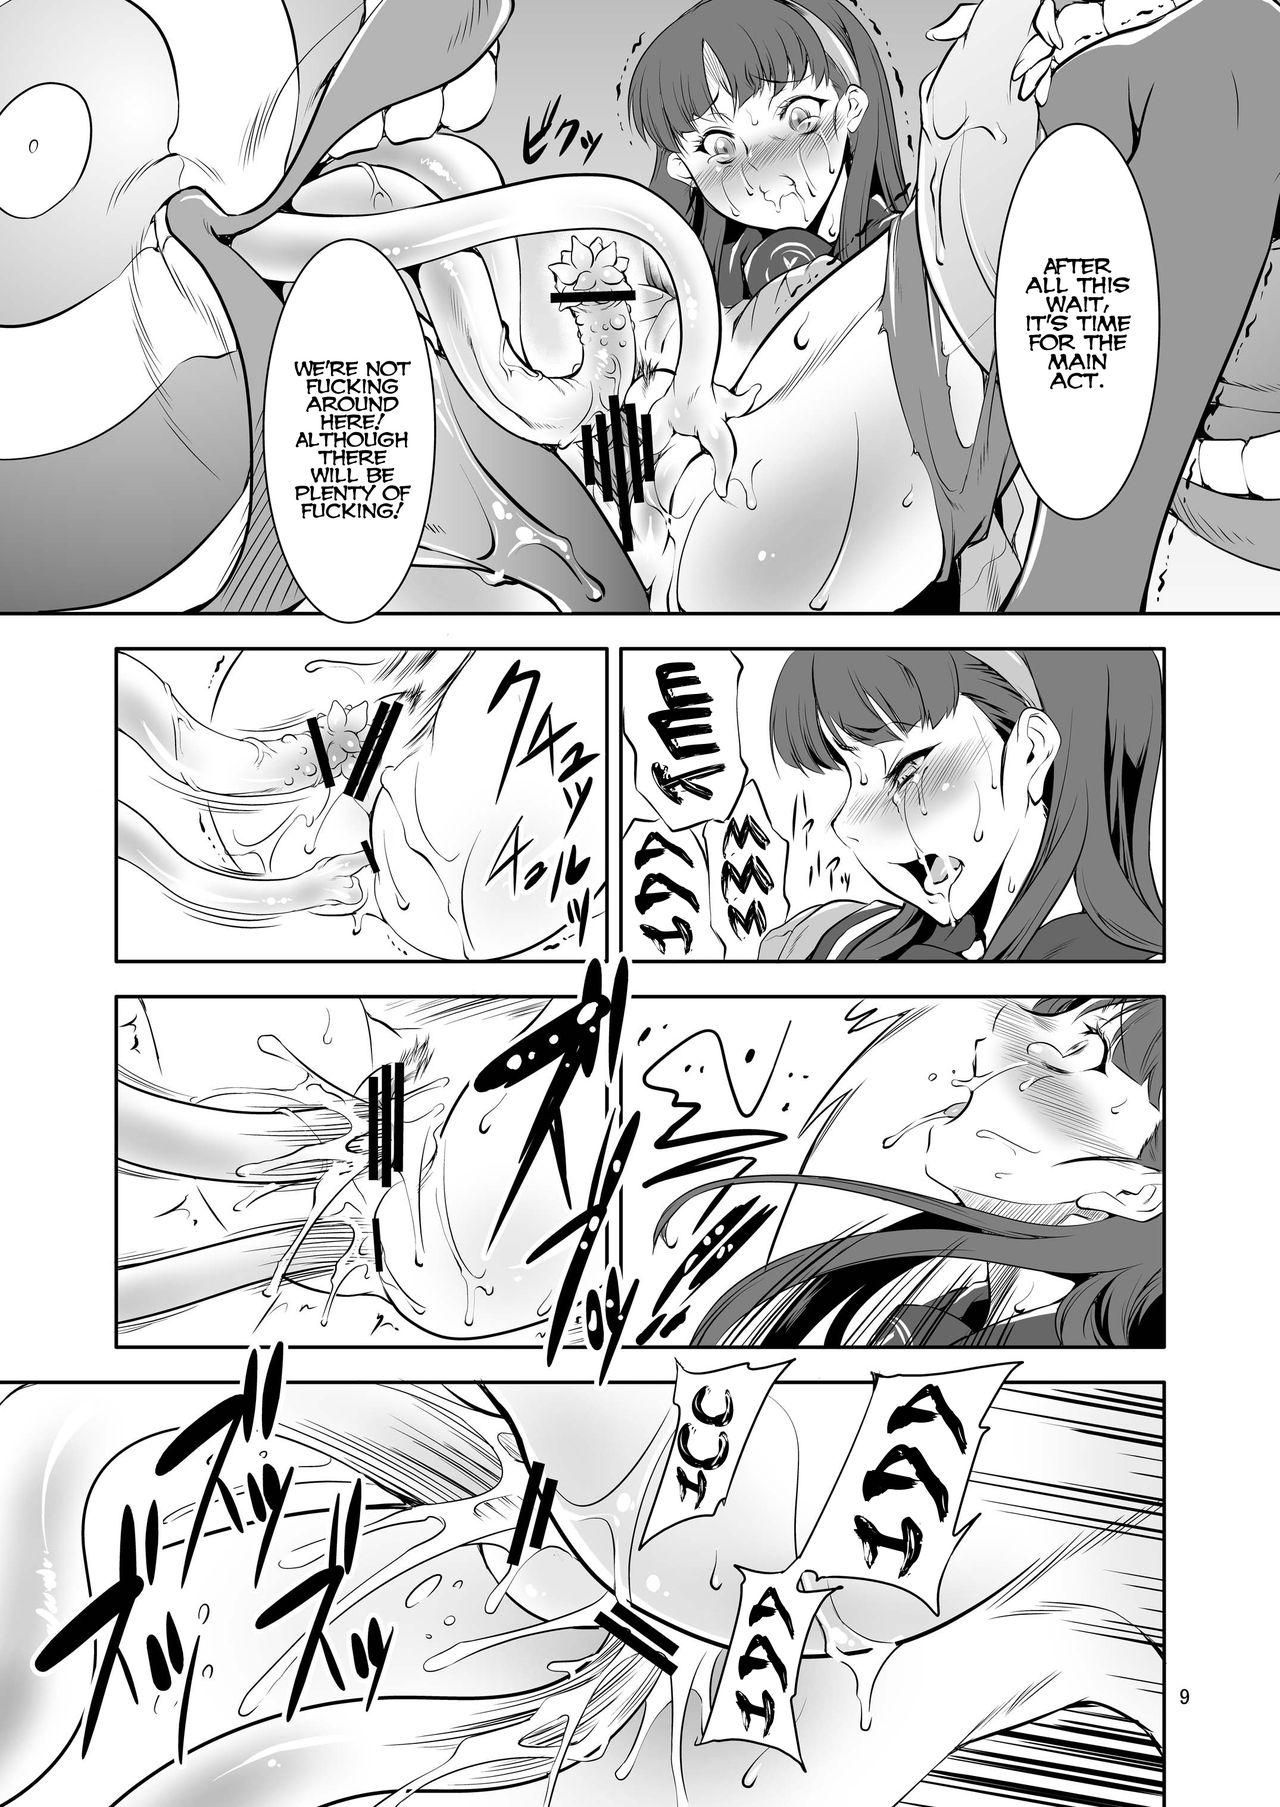 Daring YA - Persona 4 Blow Job - Page 9